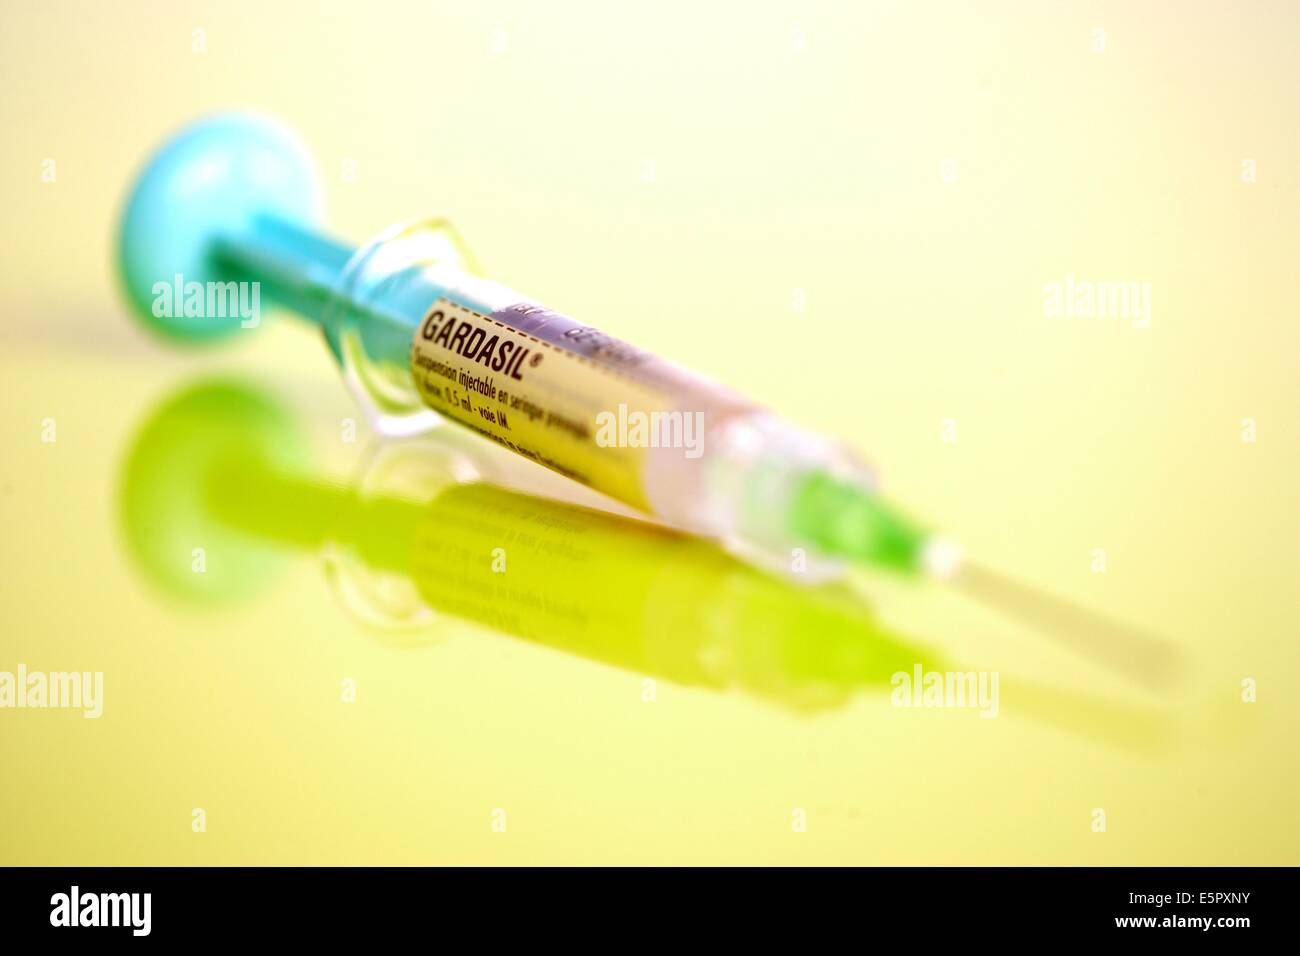 Gardasil Impfung gegen bestimmte Typen des humanen Papillomavirus (HPV) für Gebärmutterhalskrebs und Genitalwarzen verantwortlich. Stockfoto